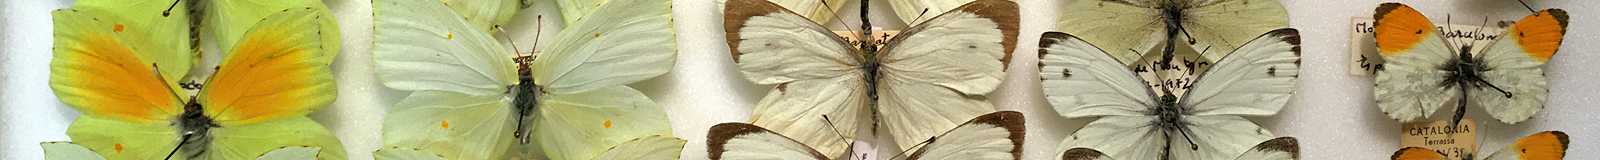 Colección de Lepidoptera